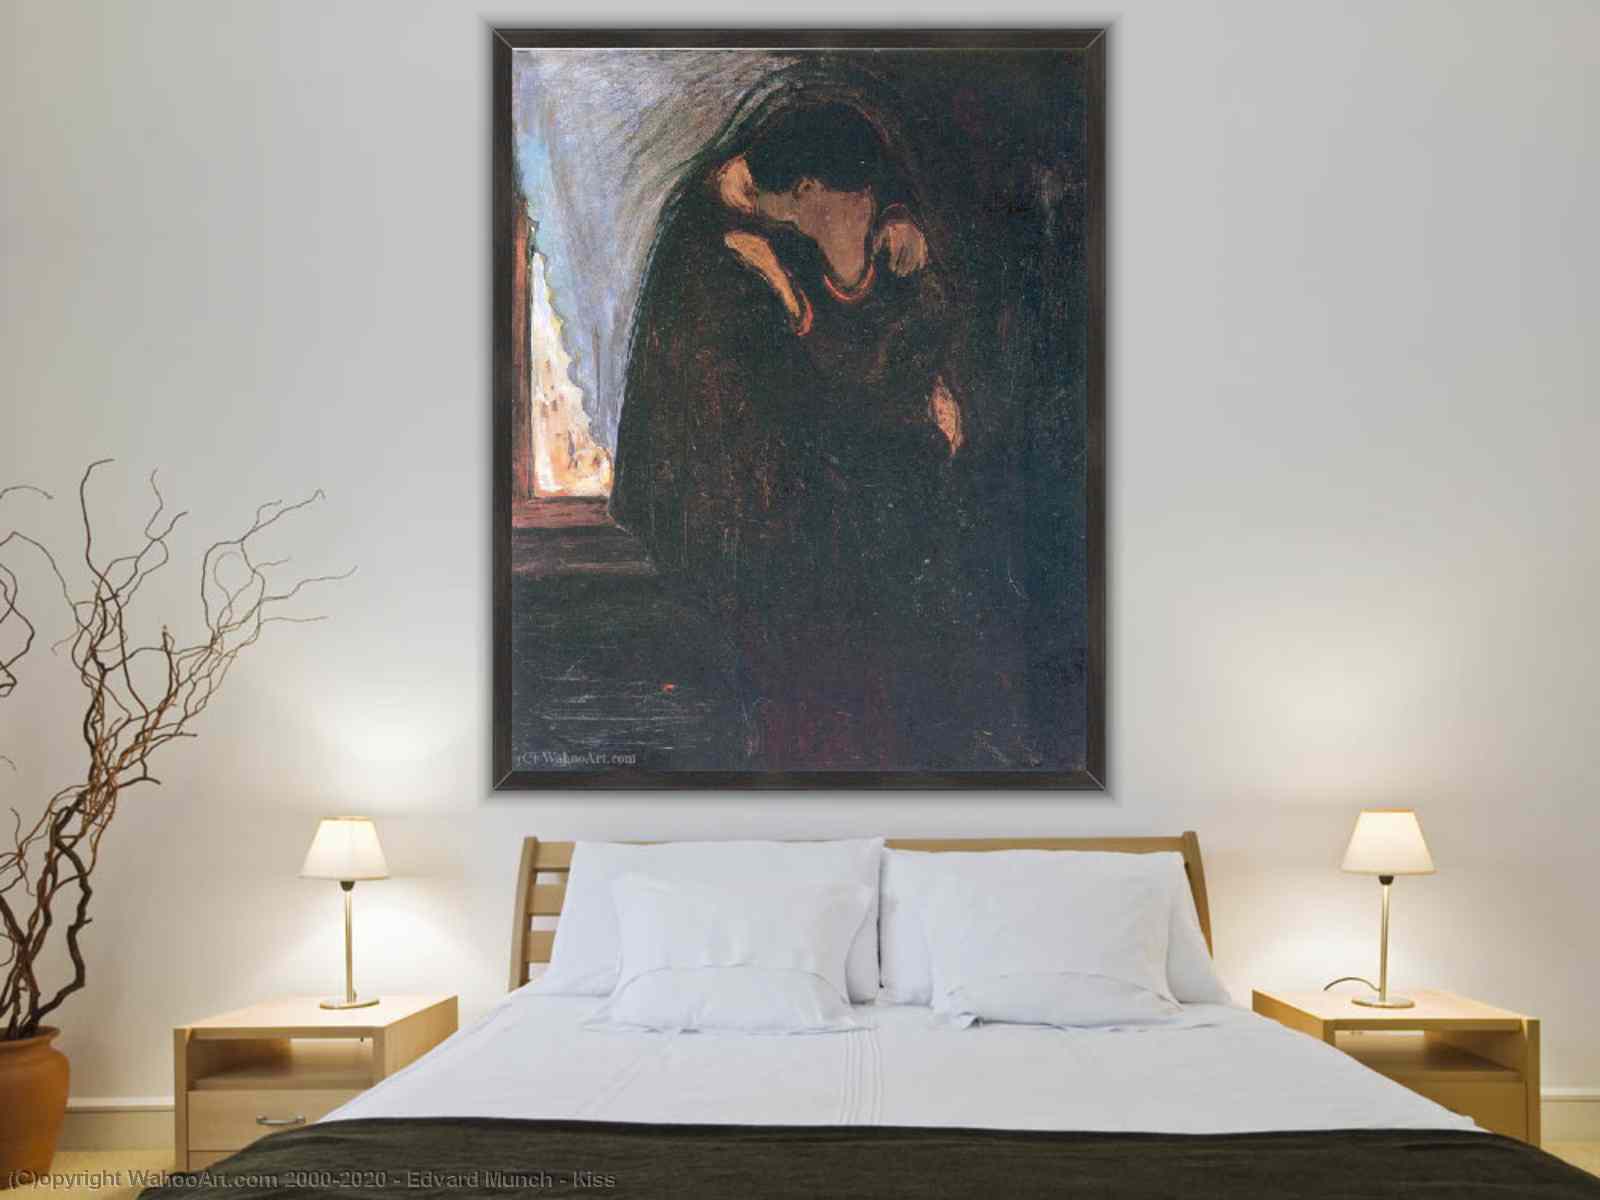 ESPECIAL NICOLAU, O beijo de Edvard Munch